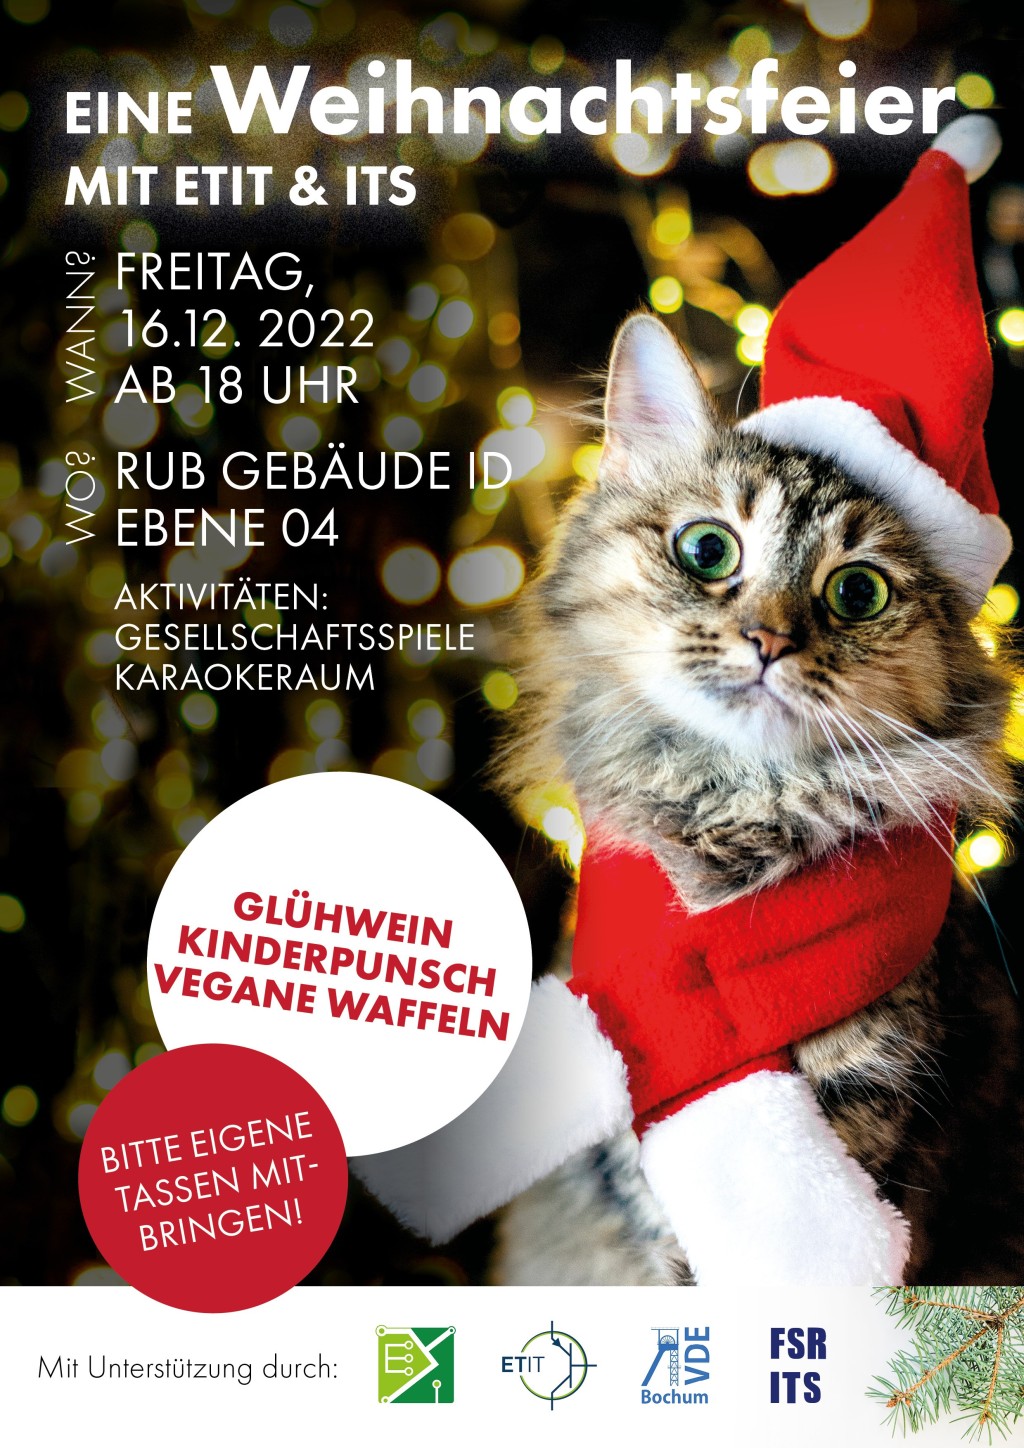 Plakat zur Weihnachtsfeier. Es zeigt eine flauschige graue Katze mit einer Weihnachtsmütze und einem roten Schal mit weißen Enden, die in die Kamera schaut.